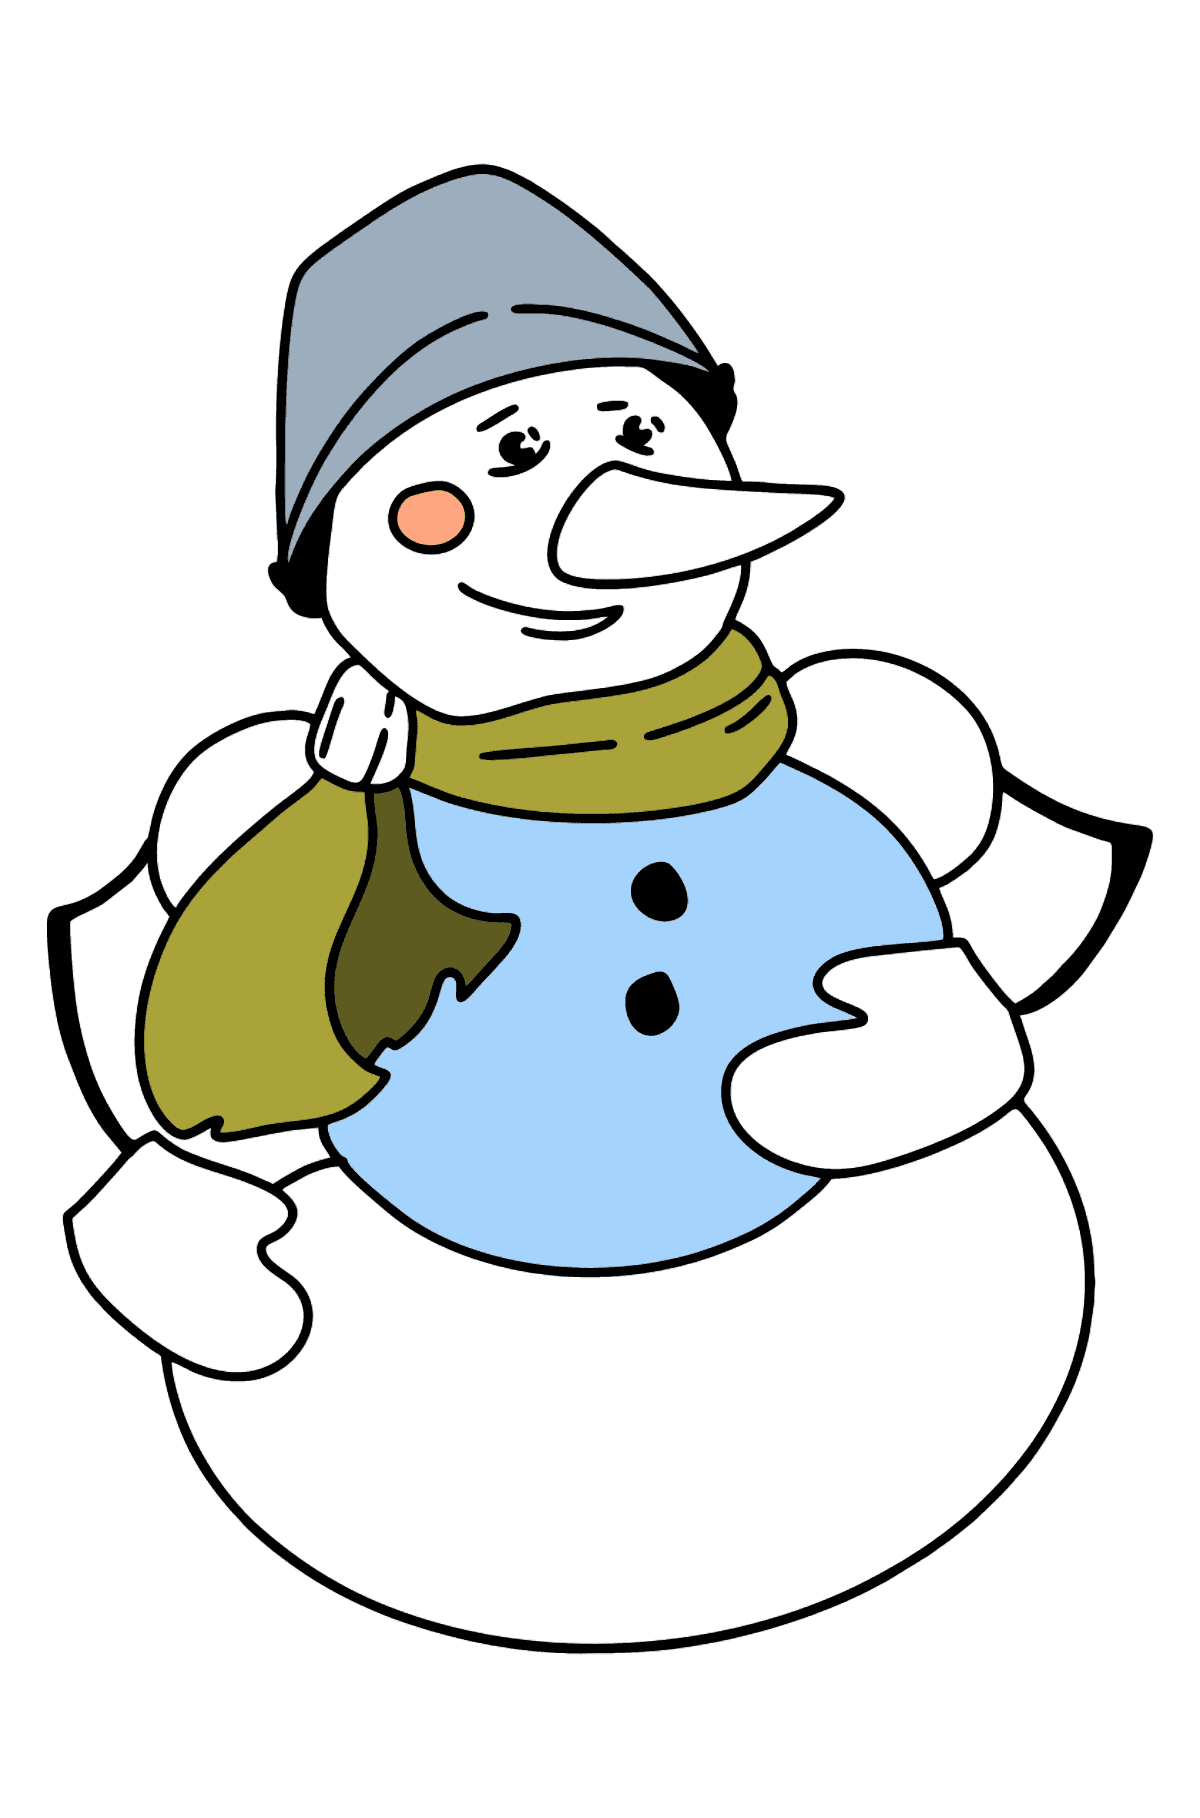 Dibujo de muñeco de nieve para colorear - Dibujos para Colorear para Niños